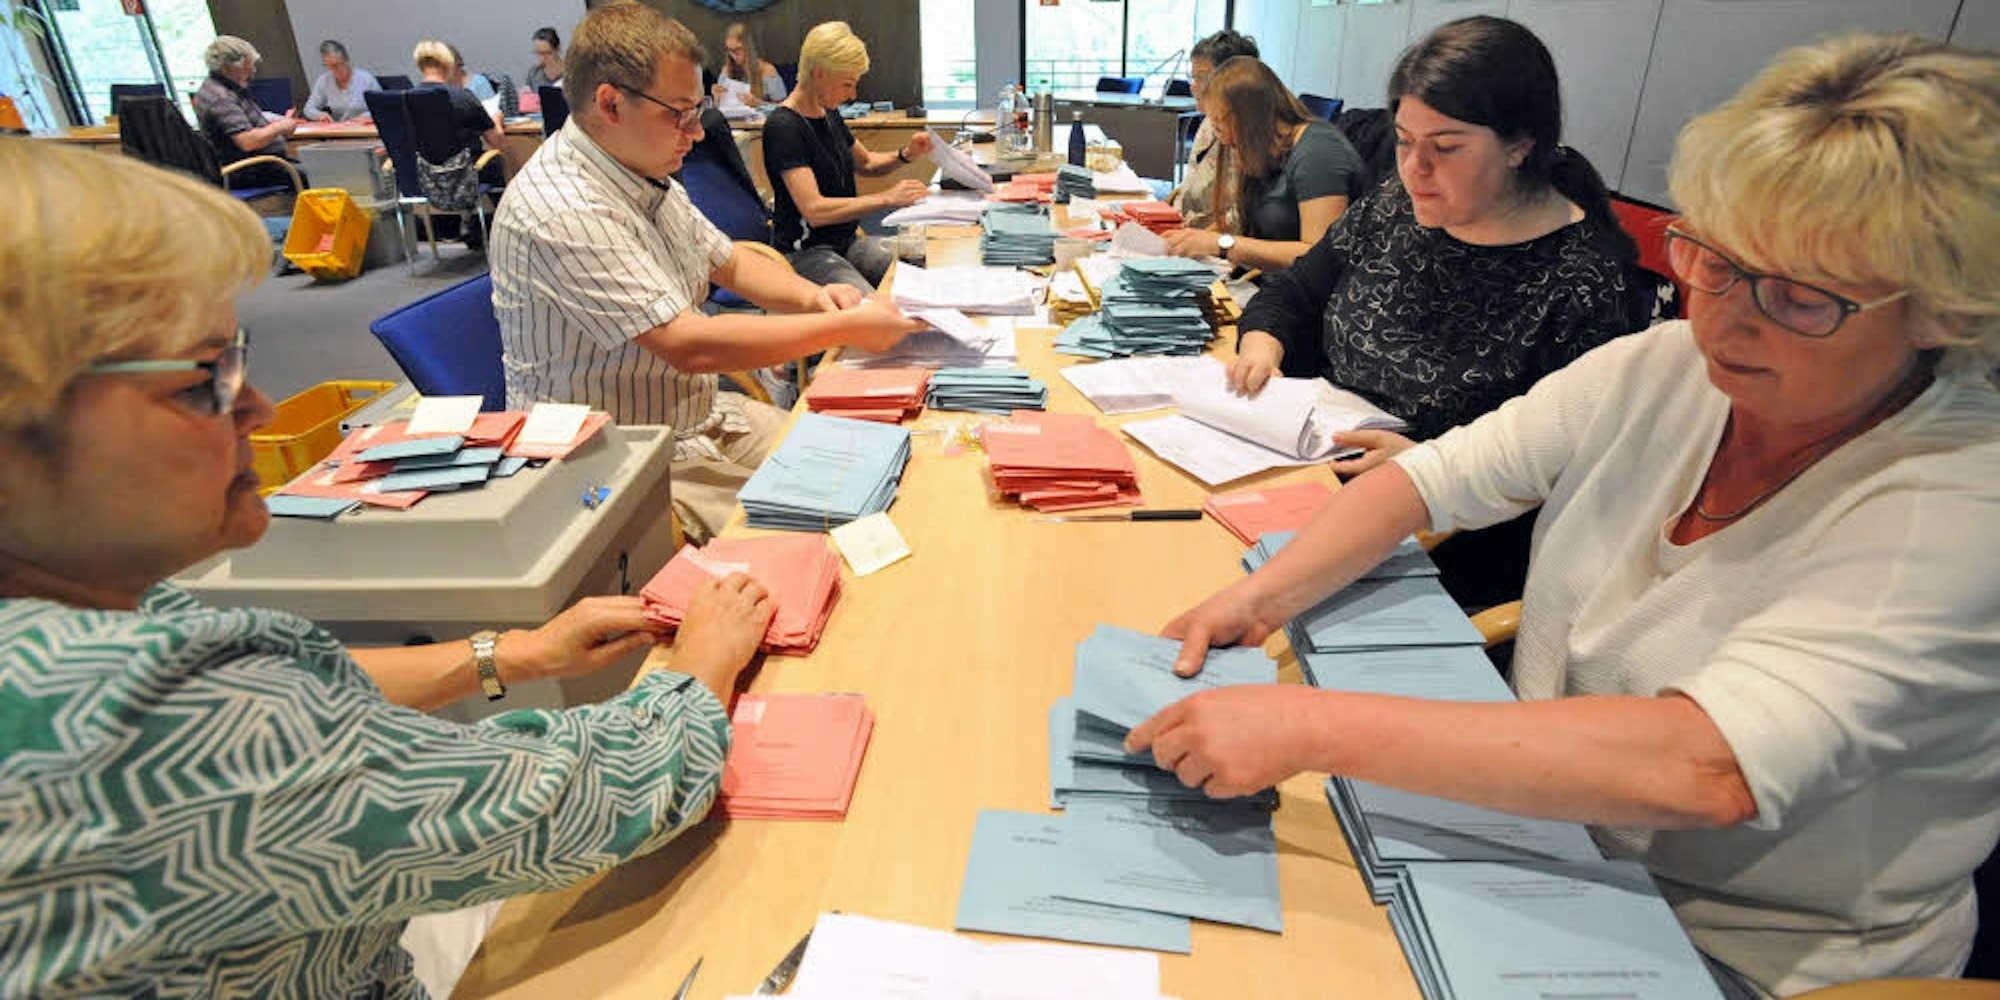 Immer mehr Arbeit beschert die Zuordnung der Briefwahlstimmen zu den Wahlbezirken den Helfern in Leichlingen, die bei der EU-Wahl am Sonntag im Ratssaal bis 22 Uhr beschäftigt waren.